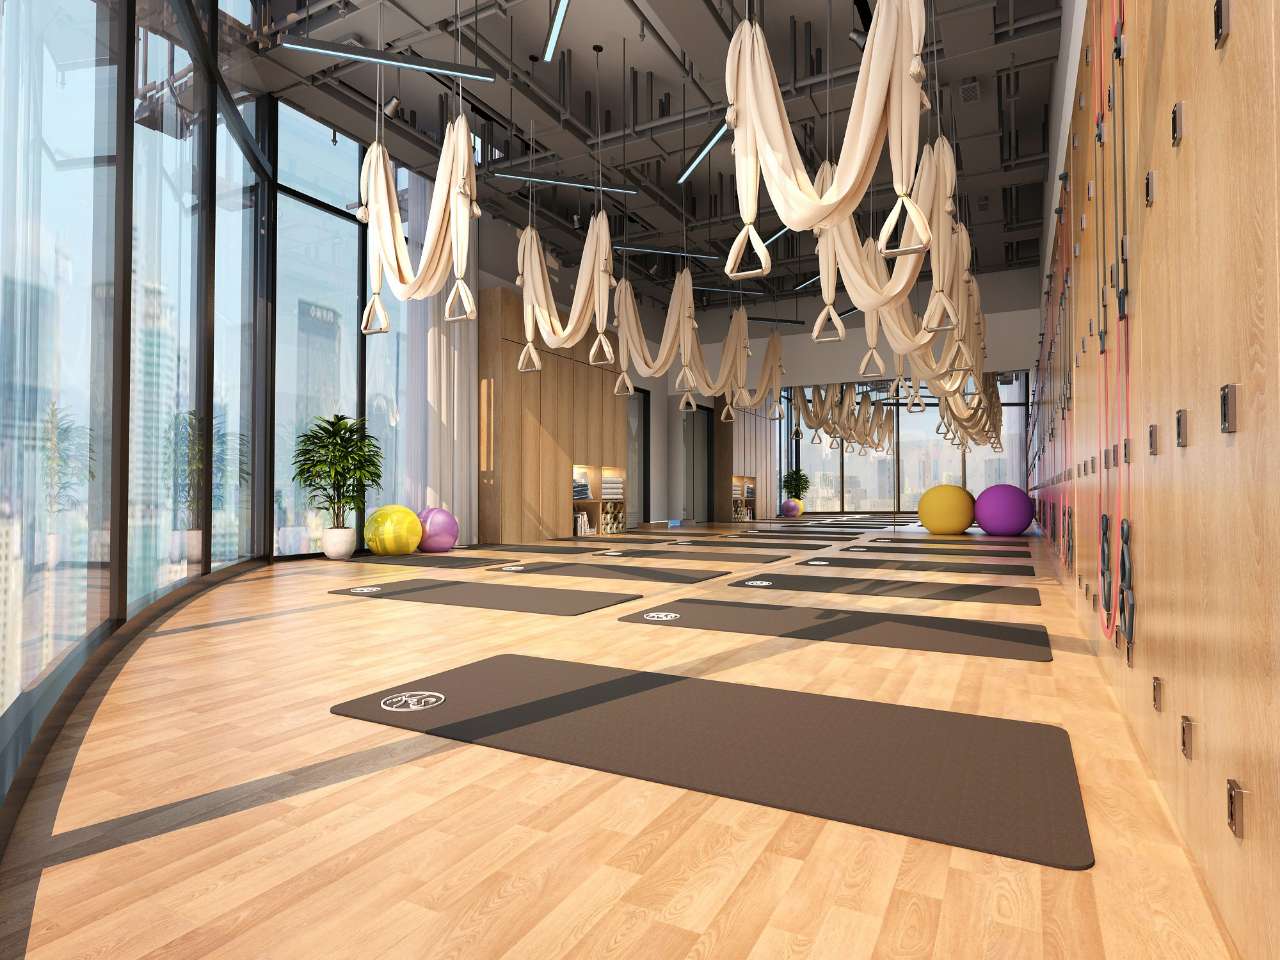 江津首家高端专业瑜伽馆开业预售活动盛大开启预存100抵2000